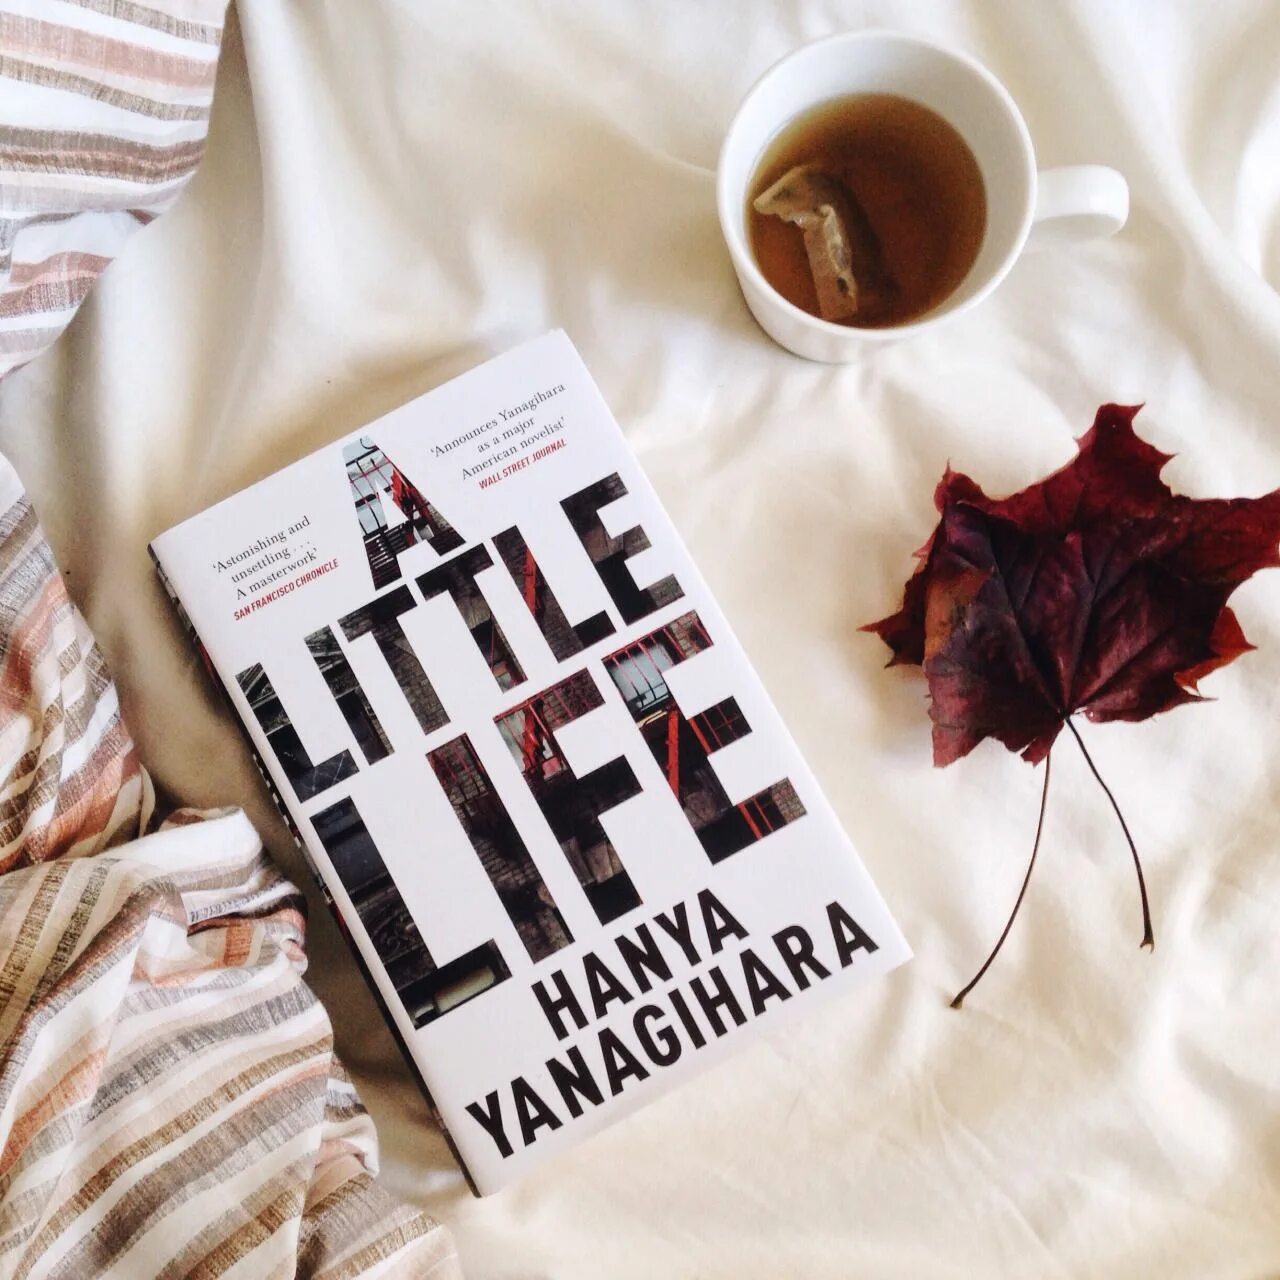 Little life book. Маленькая жизнь Ханья Янагихара. A little Life книга. Обложка книги a little Life. Маленькая жизнь книга обложка.